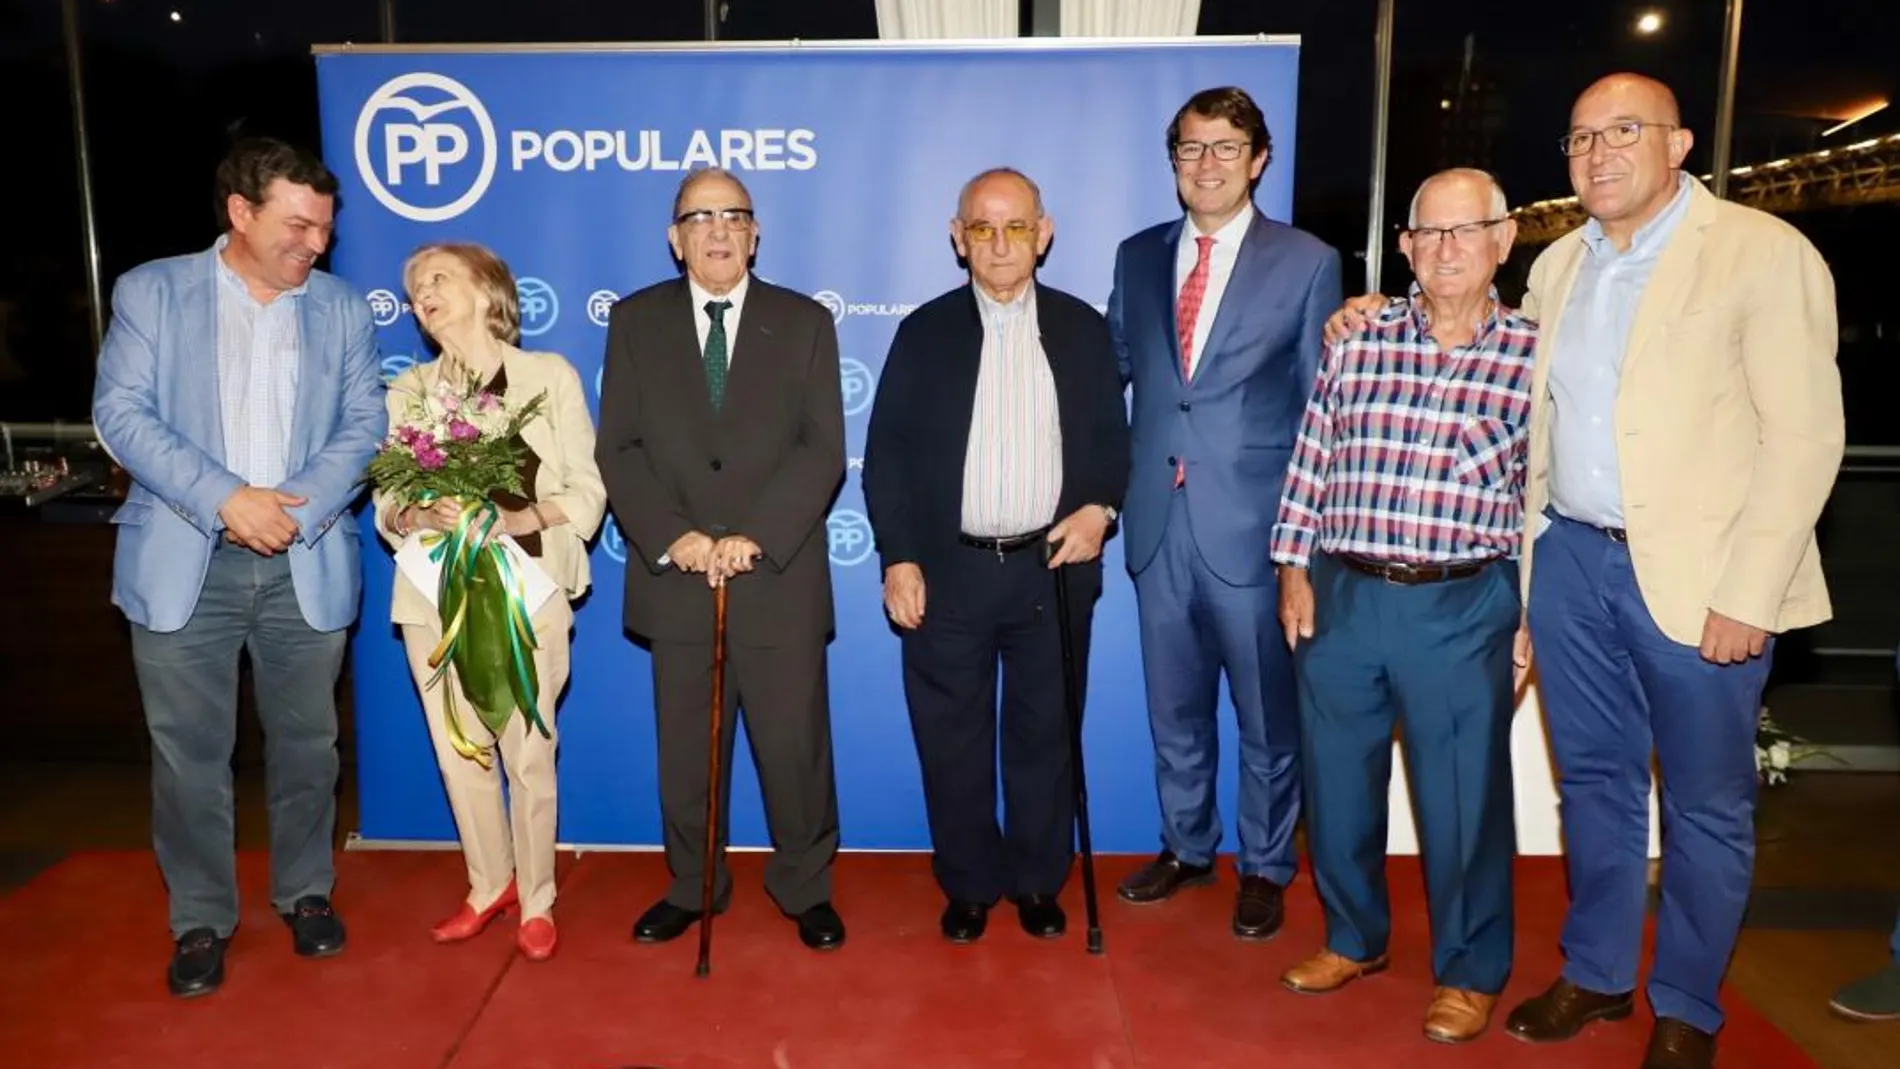 Fernández Mañueco y Carnero junto con los afiliados homenajeados